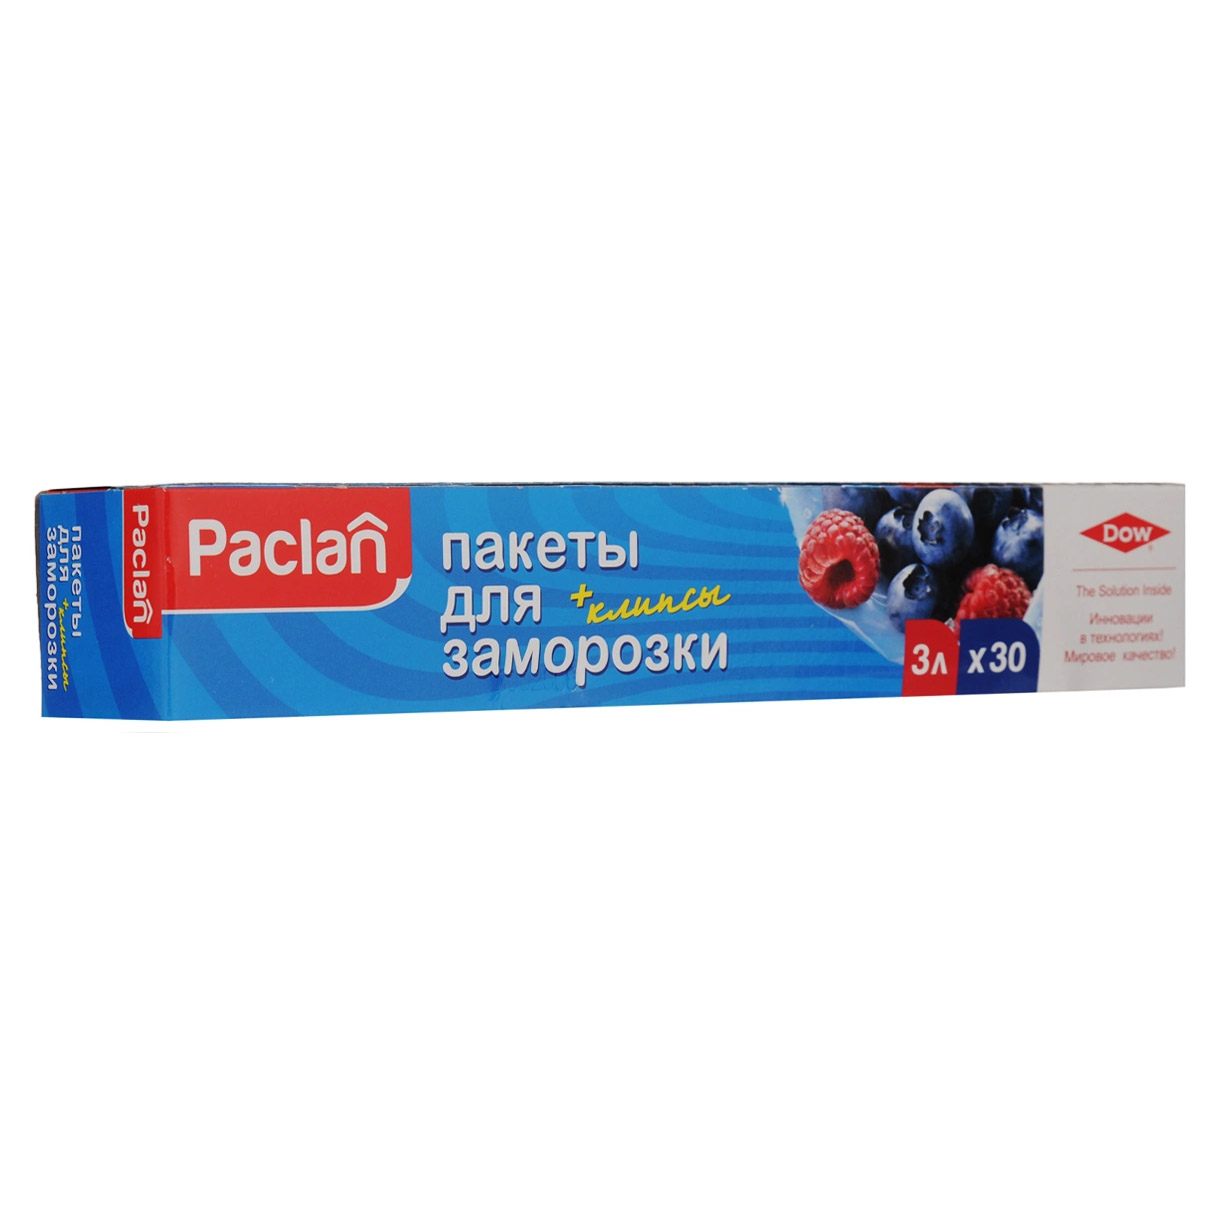 Пакеты Paclan для хранения и замораживания продуктов 3 л 30 шт пакеты ufapack для заморозки с клипсами в коробке 2 л 20х30 см 40 шт